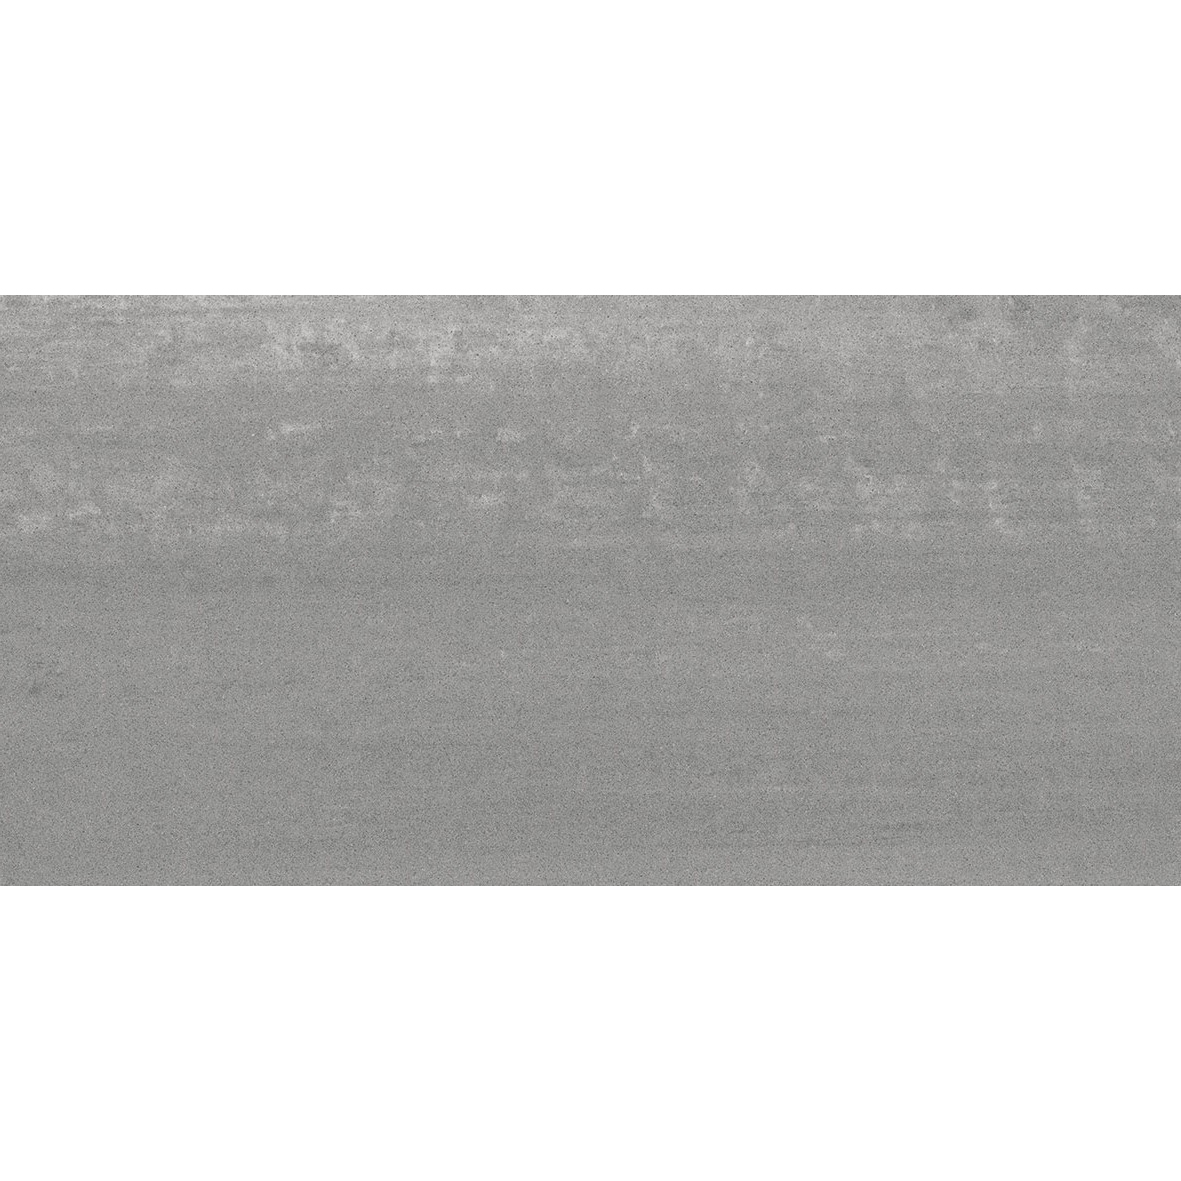 Плитка Kerama marazzi Про Дабл серый темный обрезной DD201000R 30х60 см плитка kerama marazzi джардини sg642402r обрезной лаппатированный 60x60 см темно серый